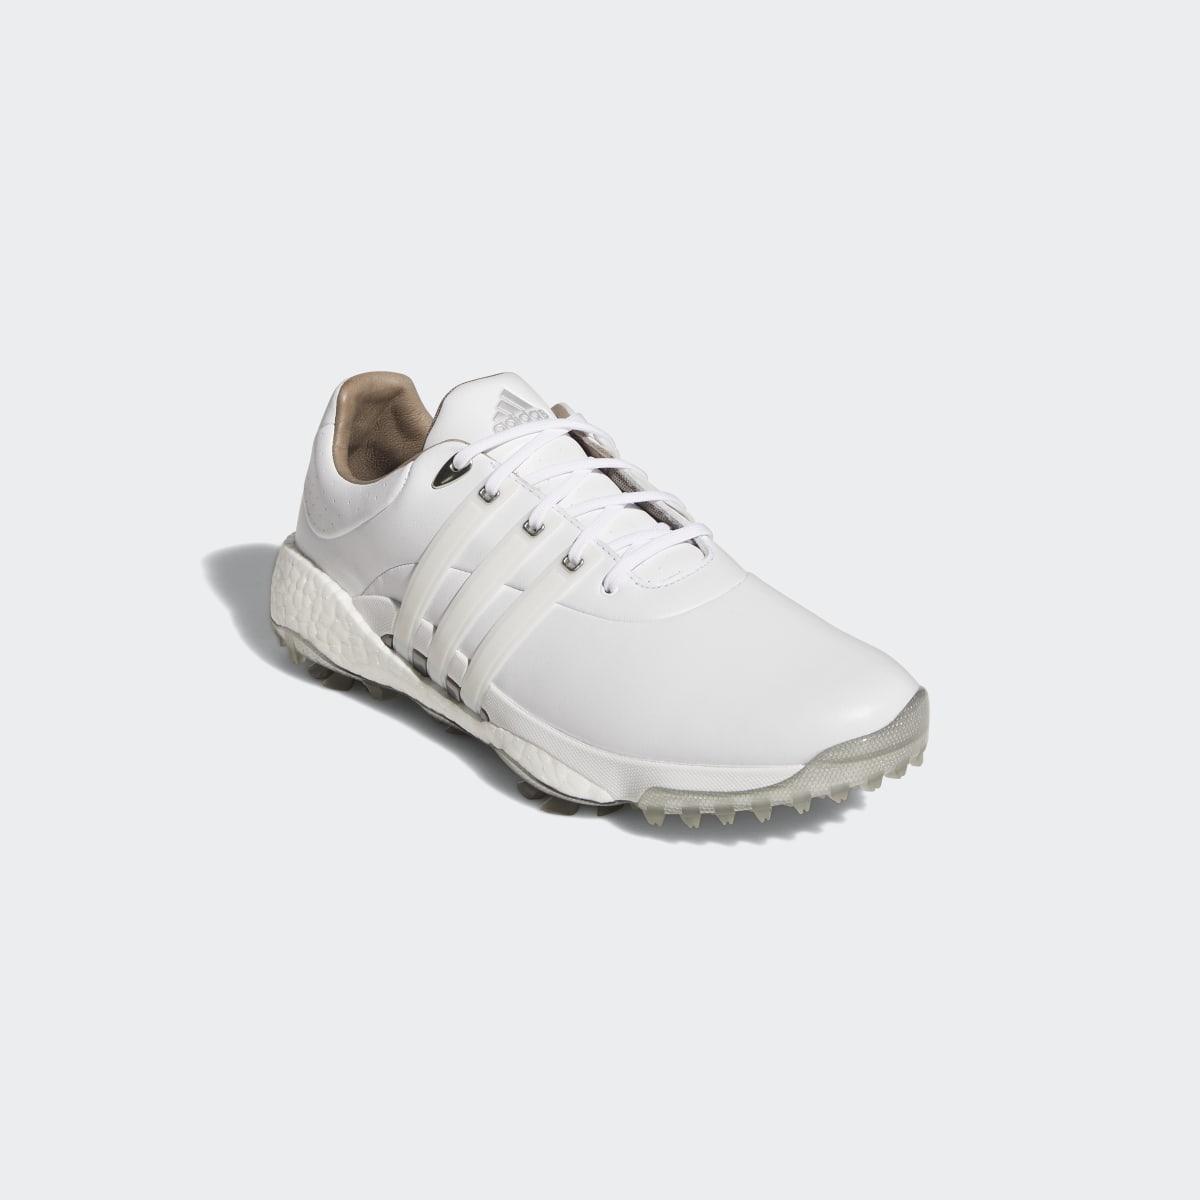 Adidas Chaussure de golf Tour360 22. 7